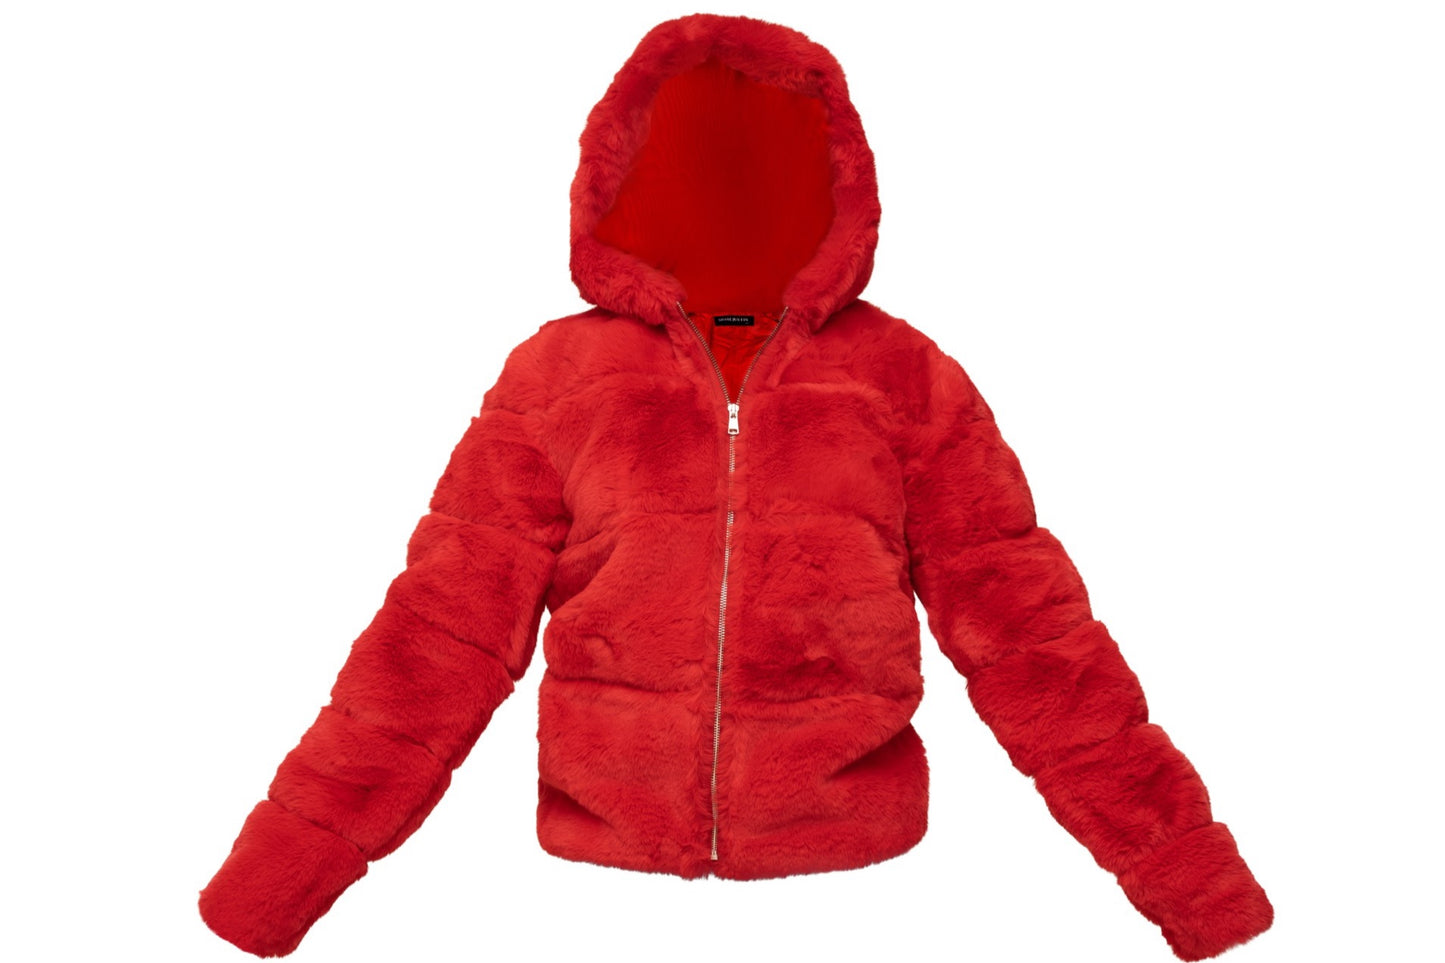 Unisex Fur Coat Red